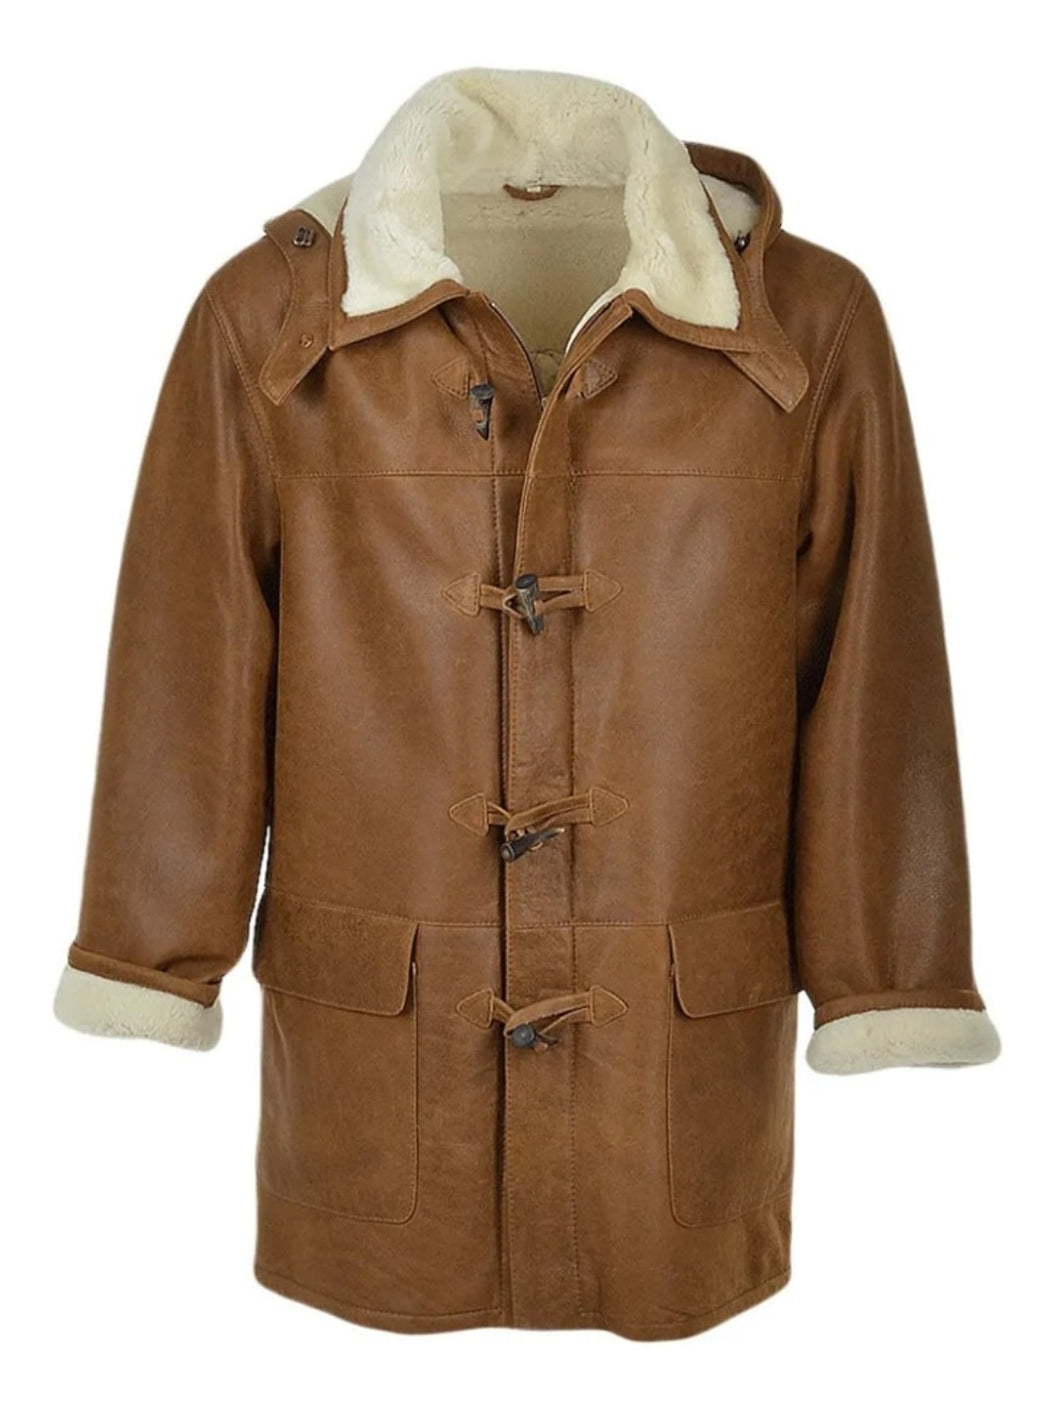 Men’s Brown Shearling Fur Hooded Winter Coat